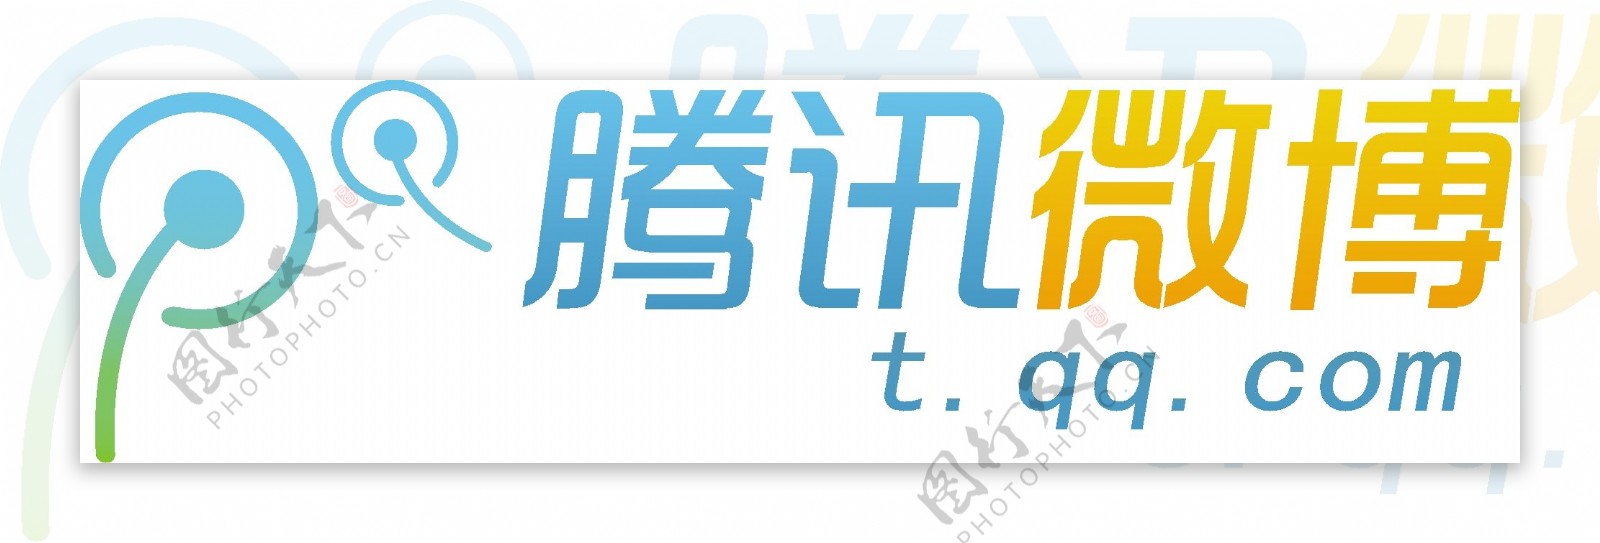 腾讯微博矢量logo图片